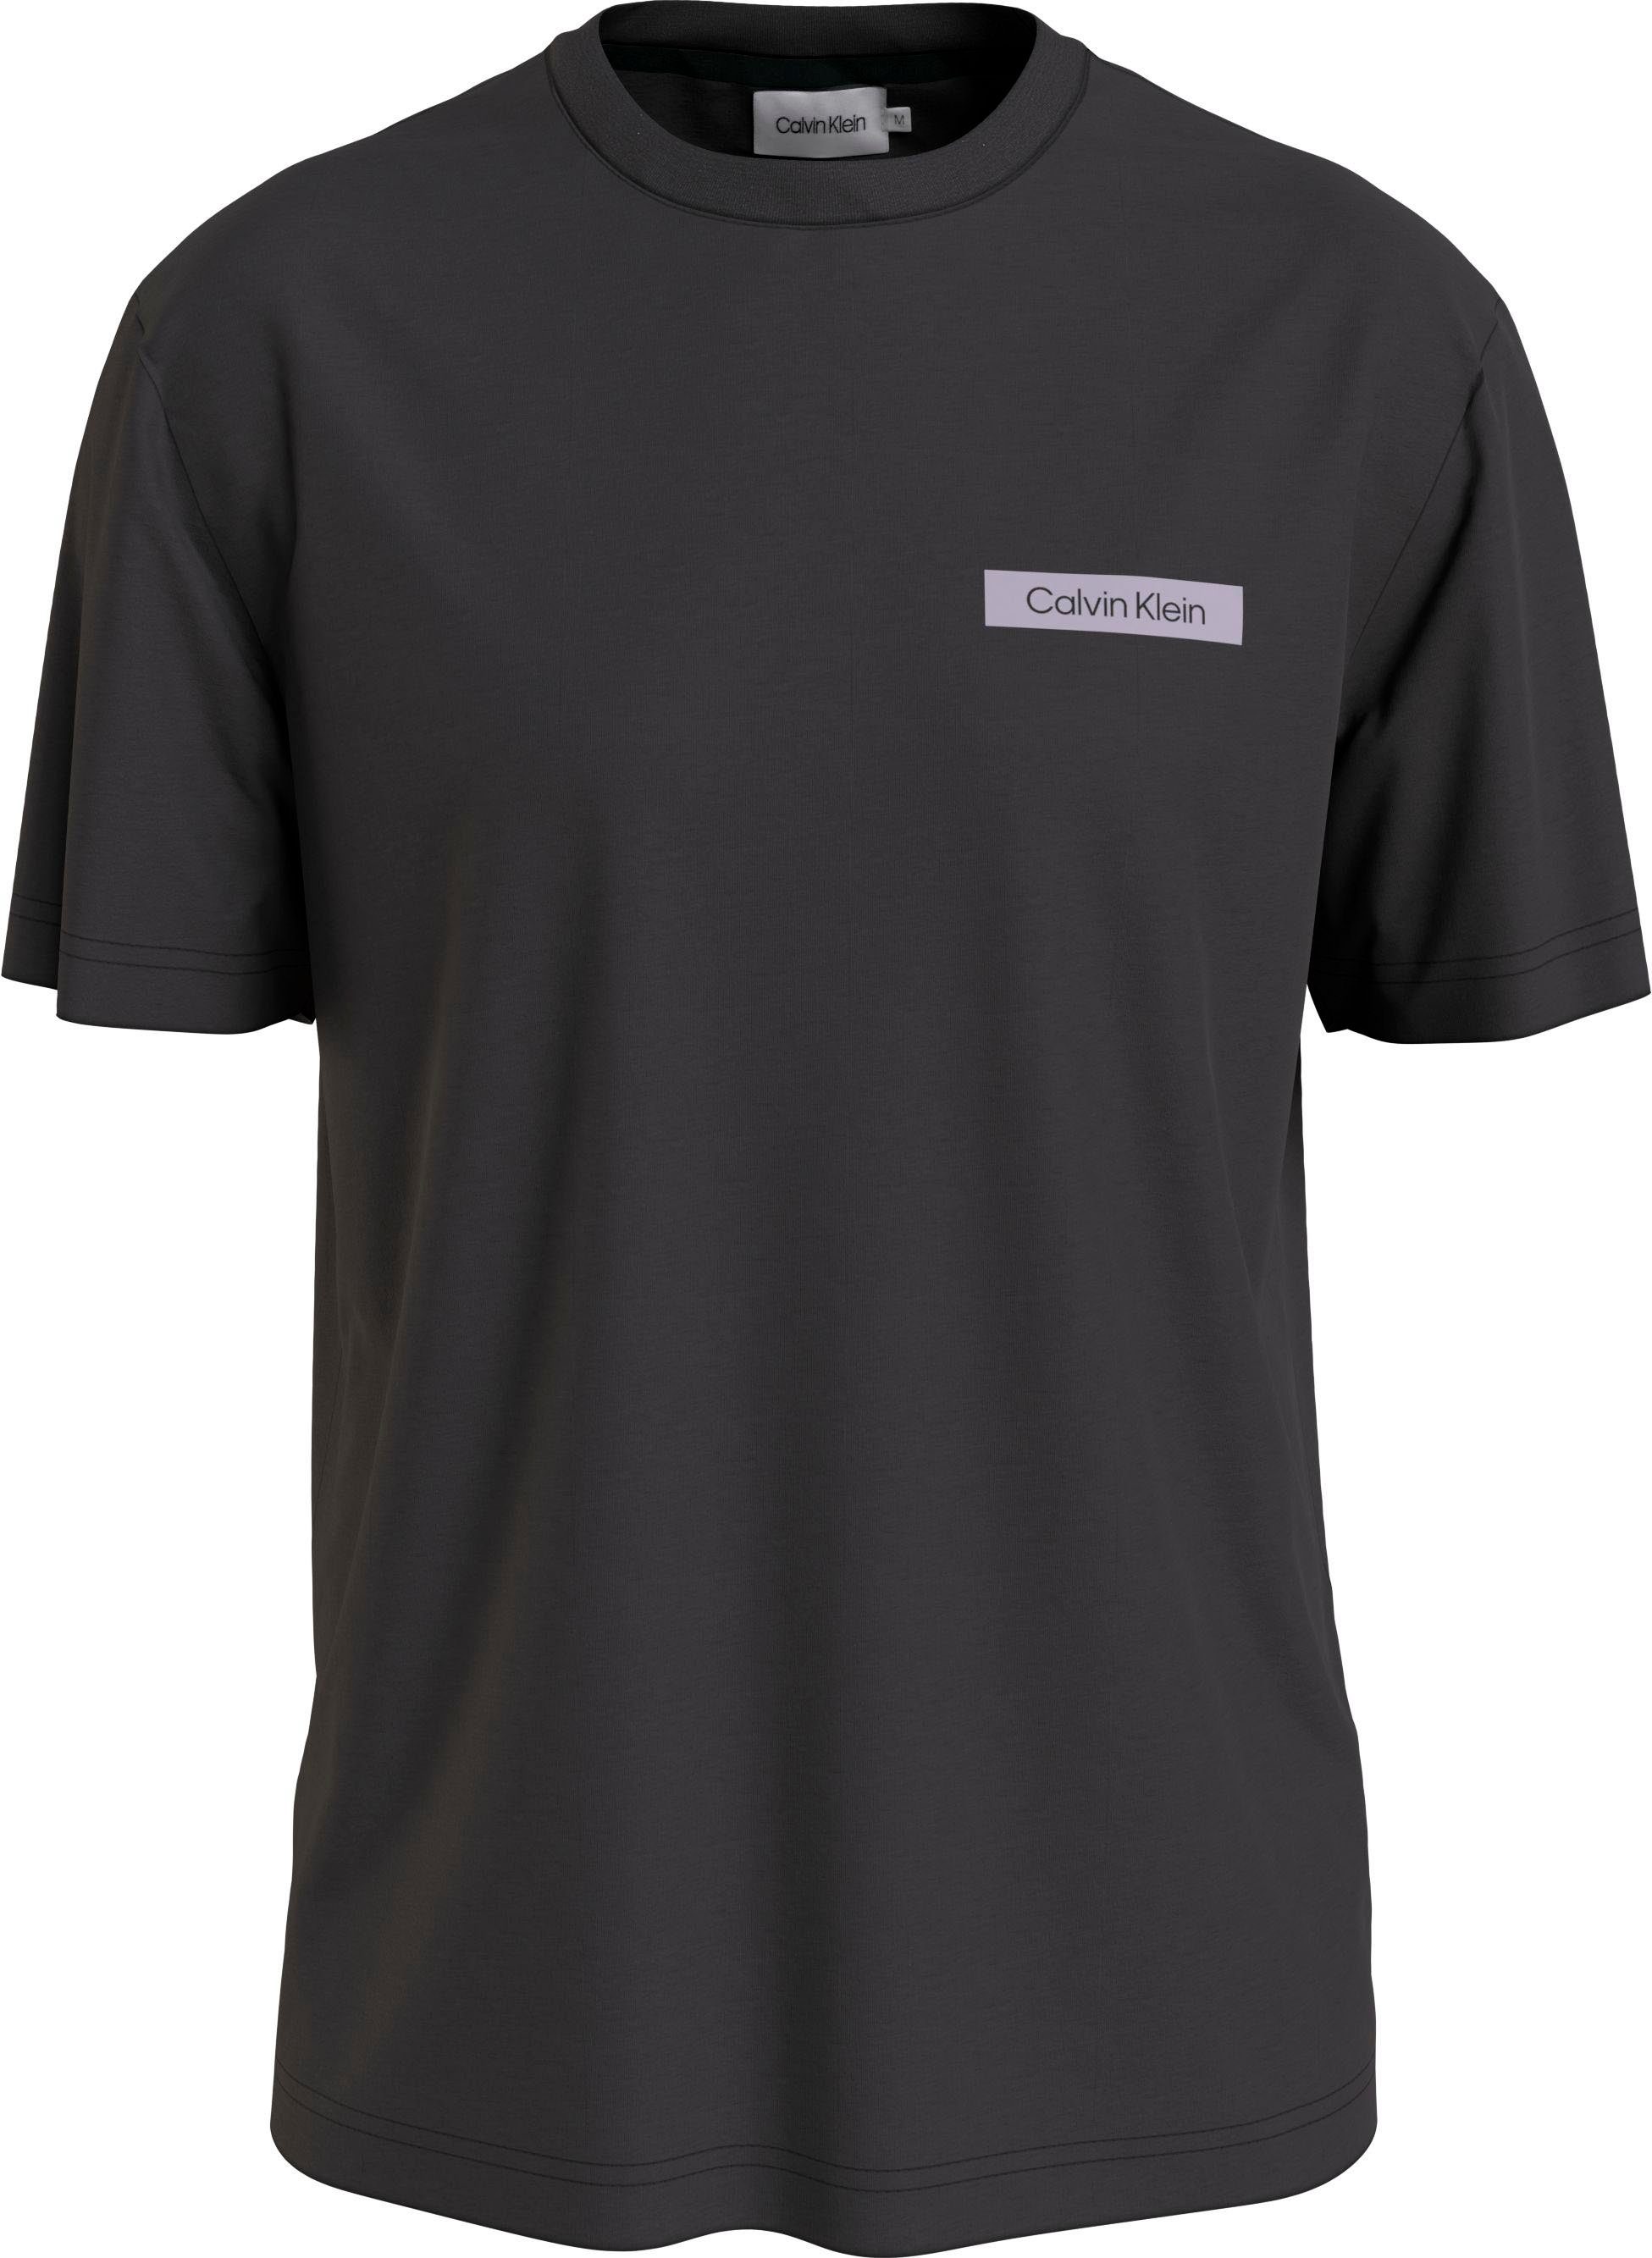 Calvin Klein Big&Tall T-Shirt mit Print auf dem Rücken schwarz